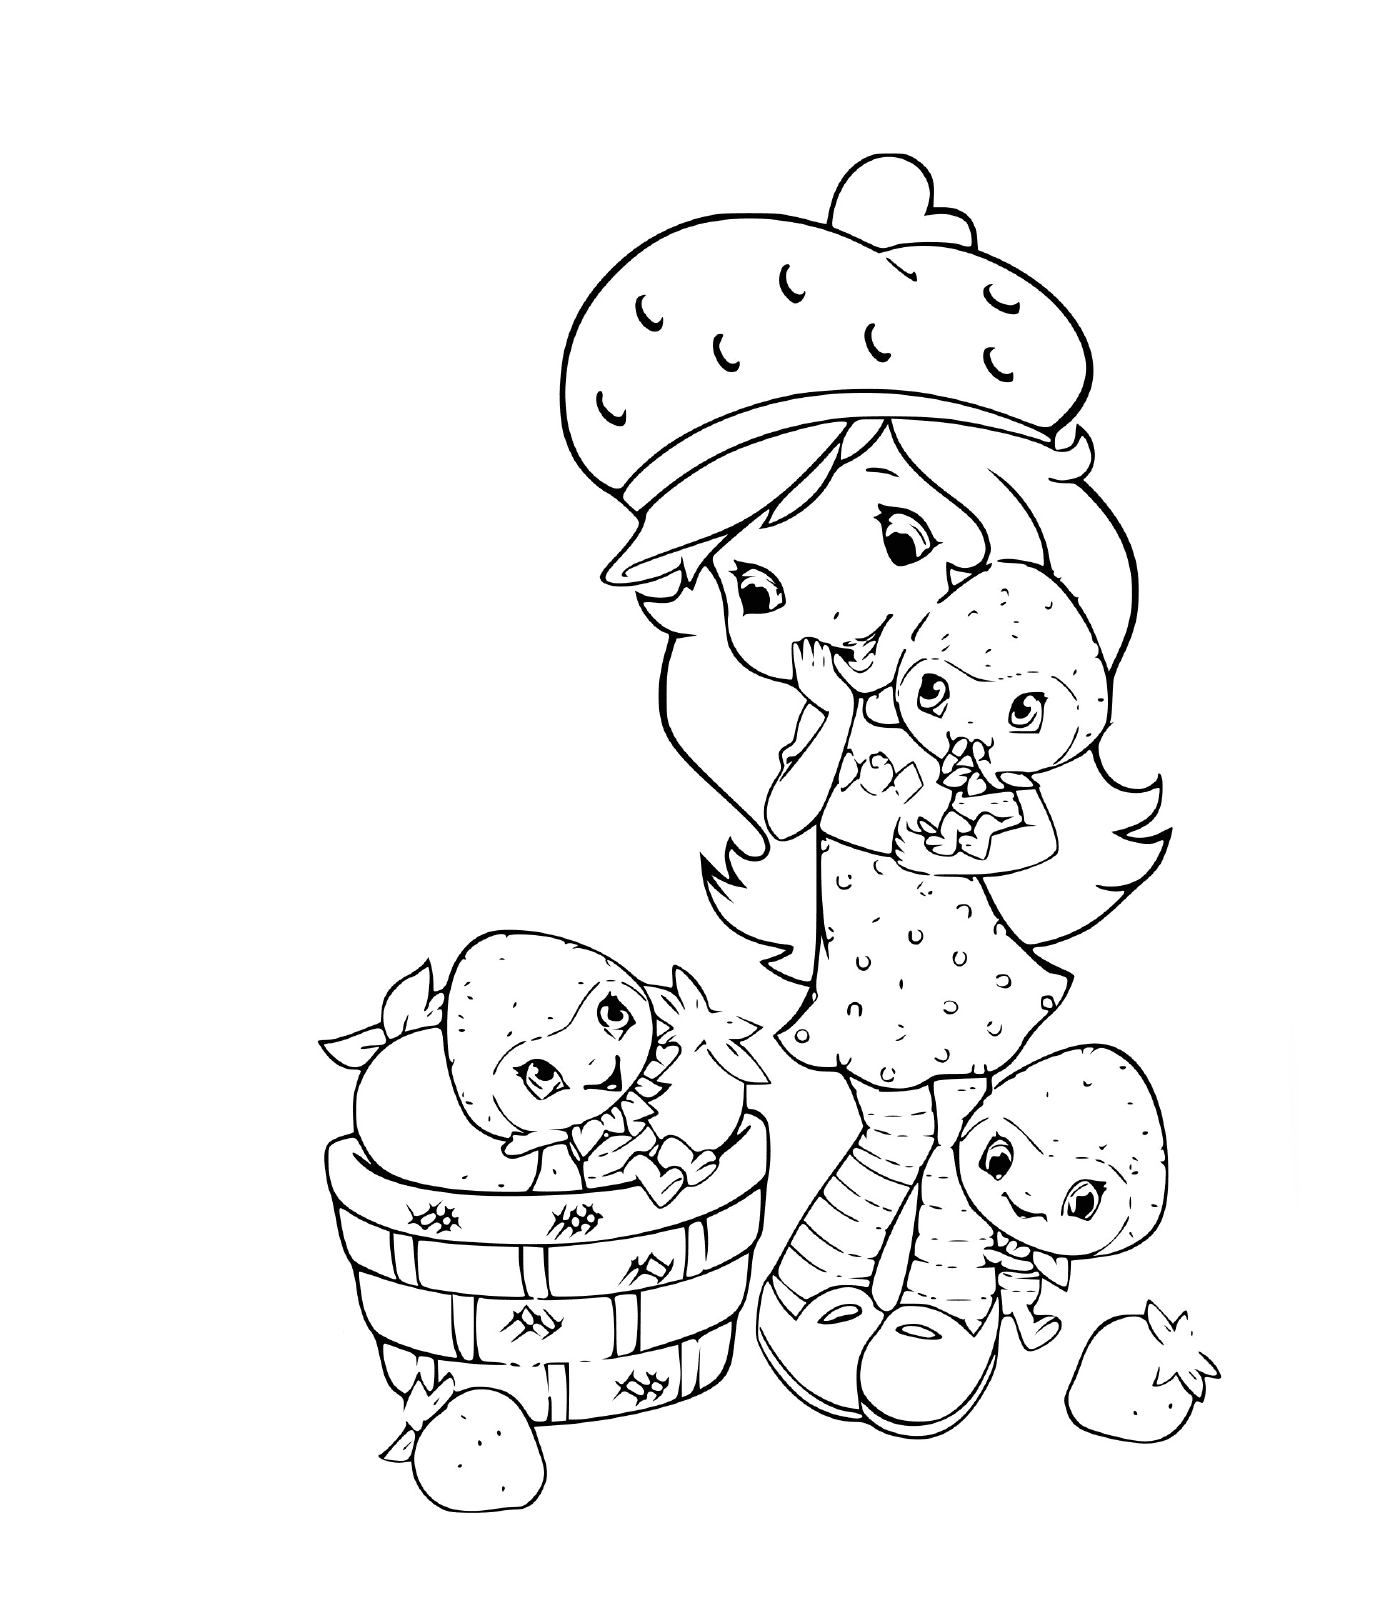  Клубника, счастливая клубника, с двумя детьми 